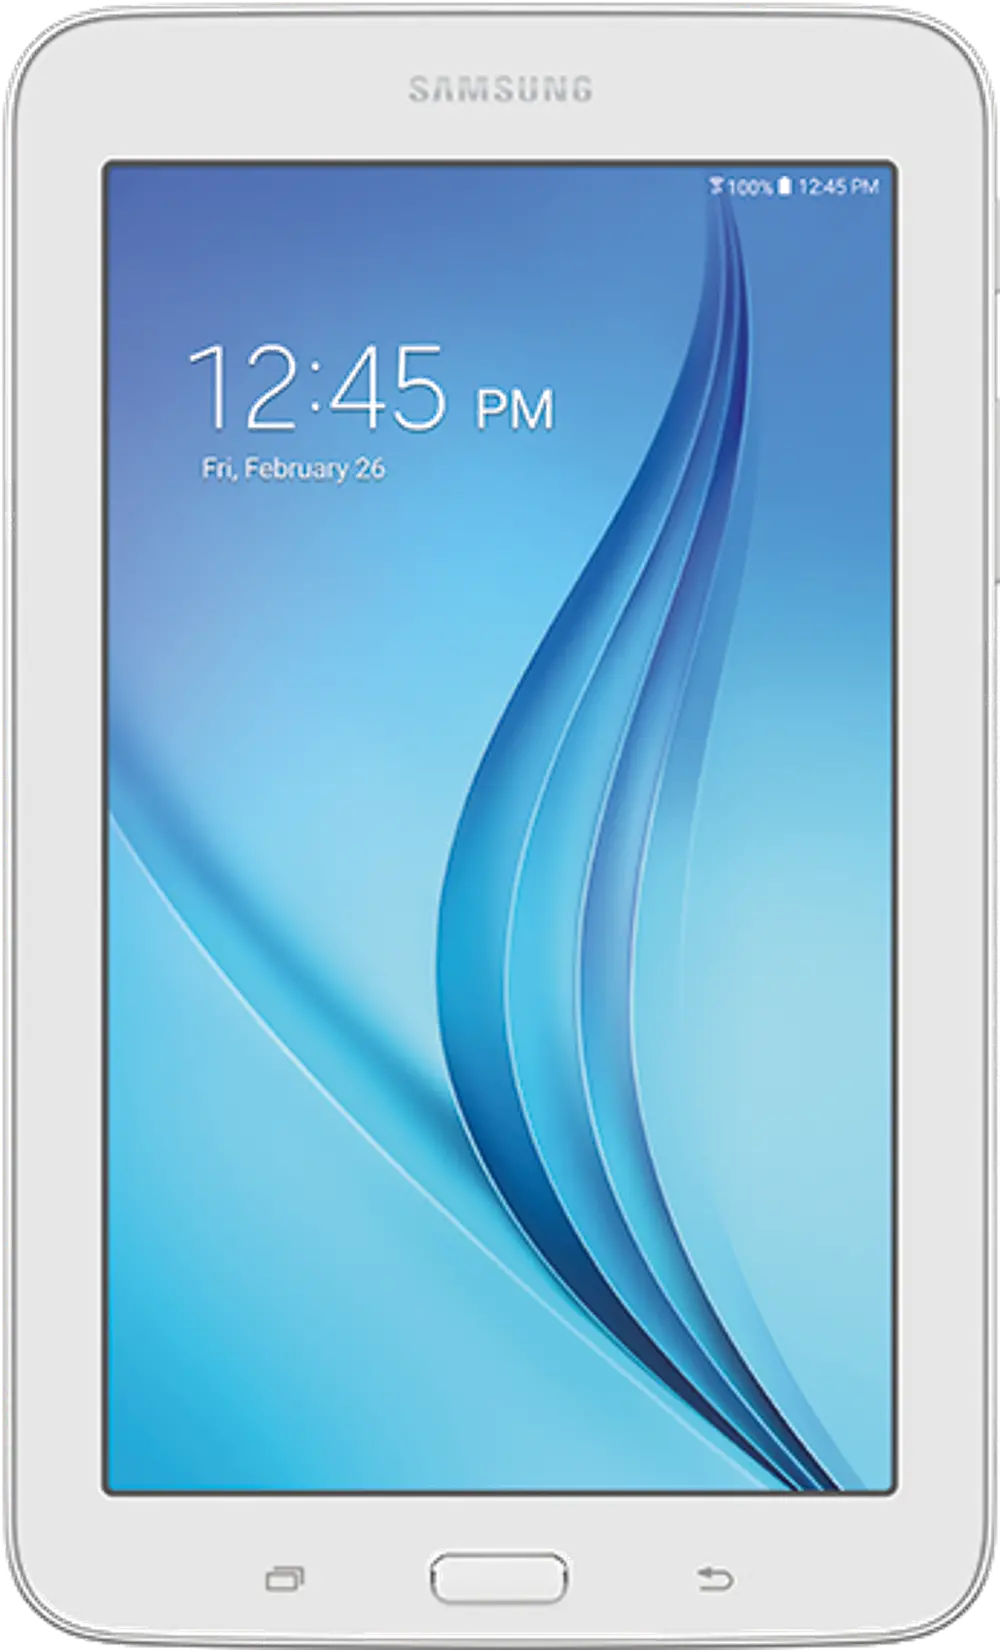 SM-T113NDWAXAR Samsung Galaxy Tab E Lite 7.0 Inch 8GB - White-1